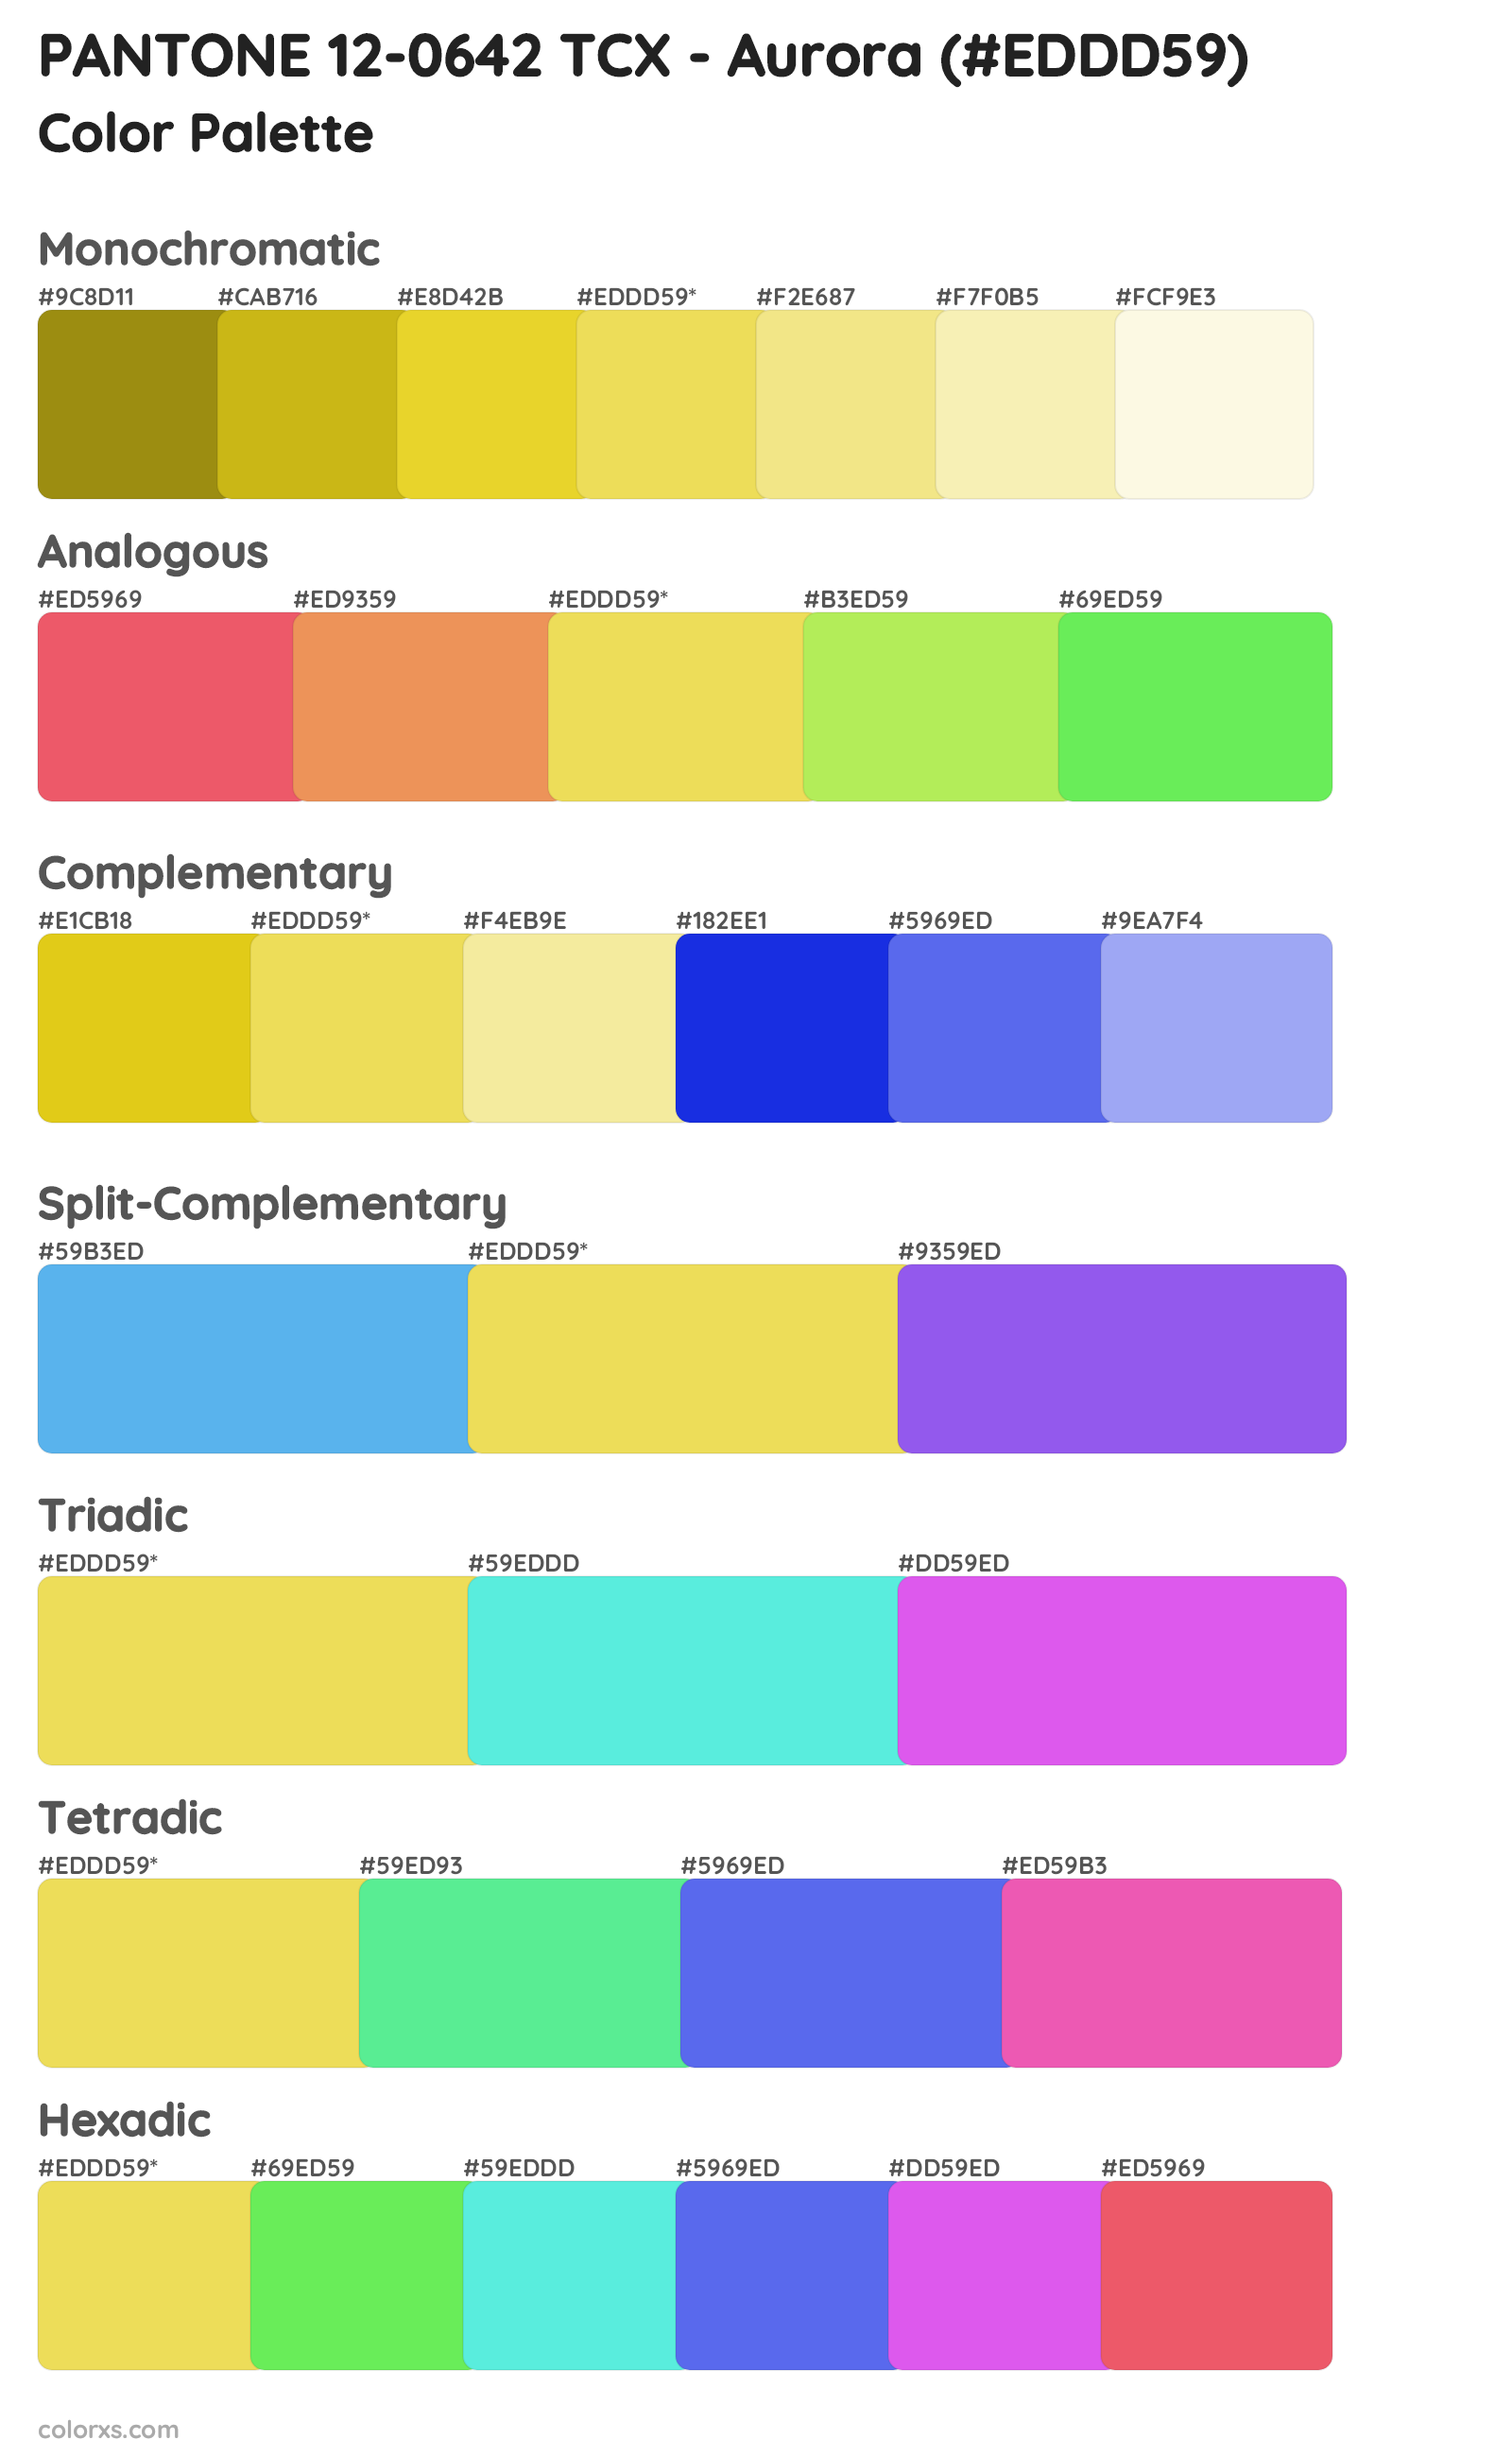 PANTONE 12-0642 TCX - Aurora Color Scheme Palettes